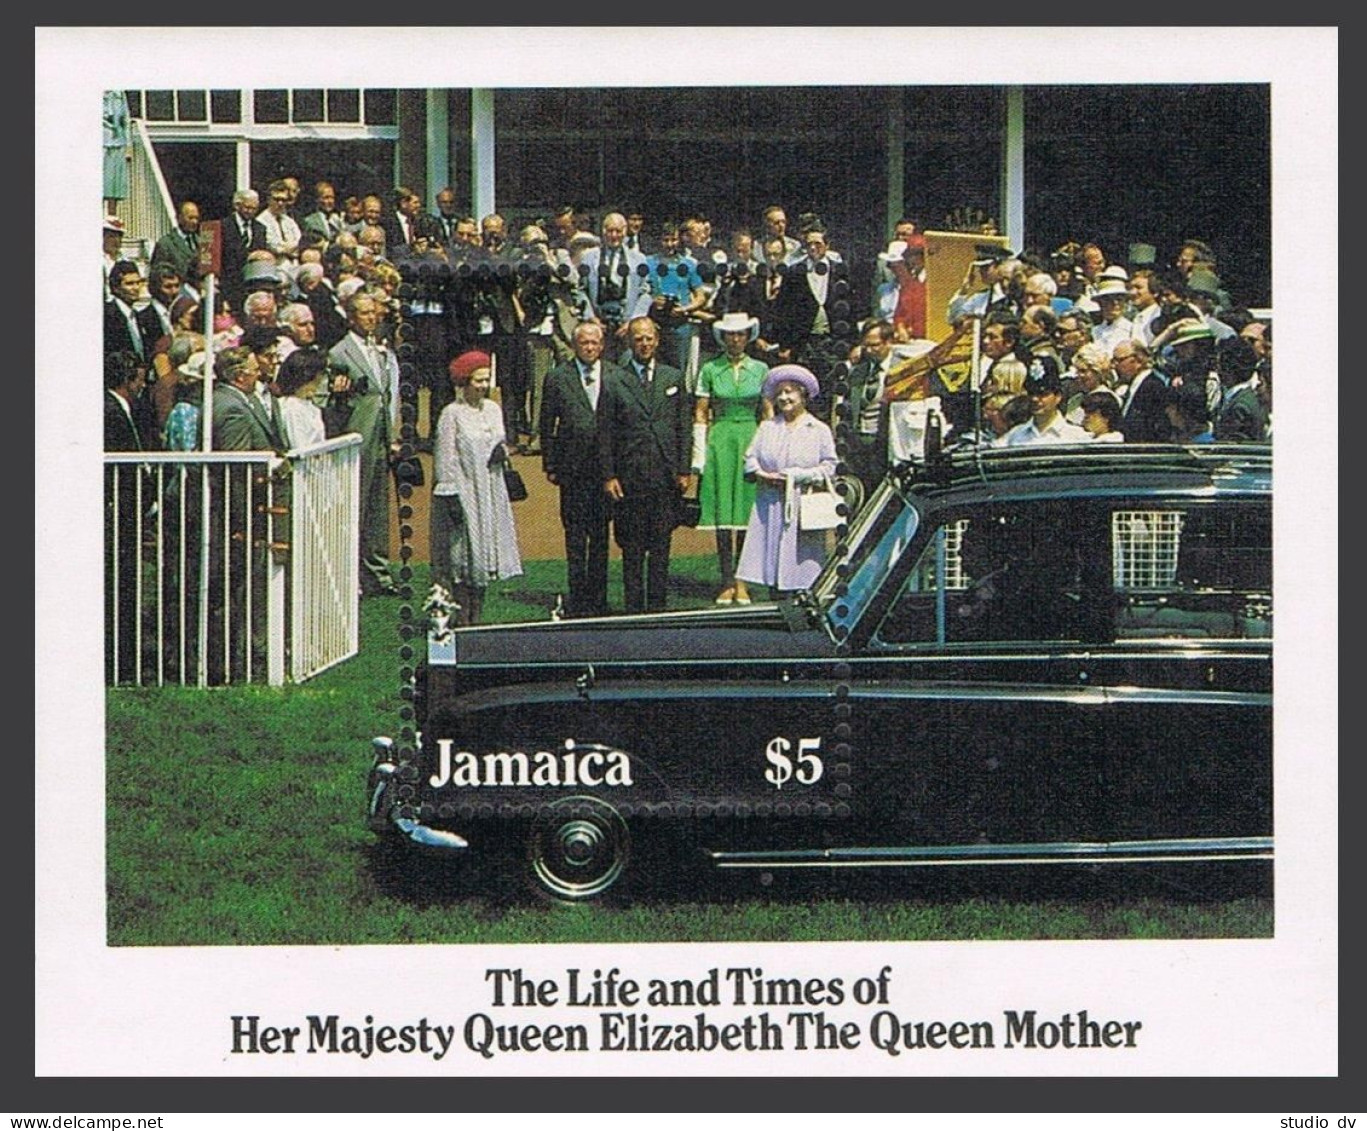 Jamaica 603, MNH. Michel 611 Bl.26. Queen Mother Elizabeth, 85th Birthday. 1985. - Jamaique (1962-...)